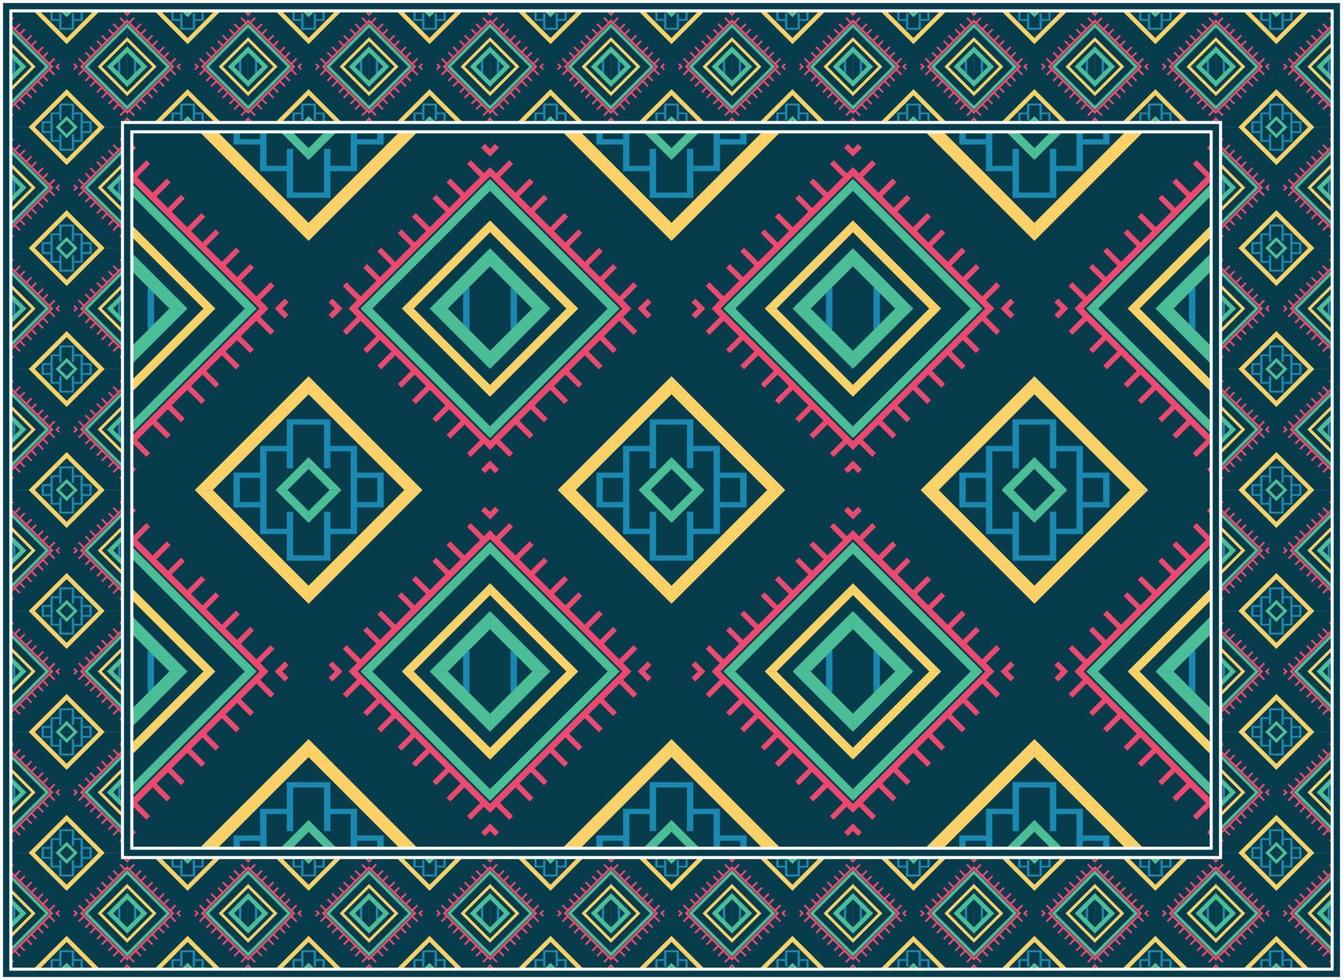 persisk matta modern levande rum, motiv etnisk sömlös mönster scandinavian persisk matta modern afrikansk etnisk aztec stil design för skriva ut tyg mattor, handdukar, näsdukar, halsdukar matta, vektor